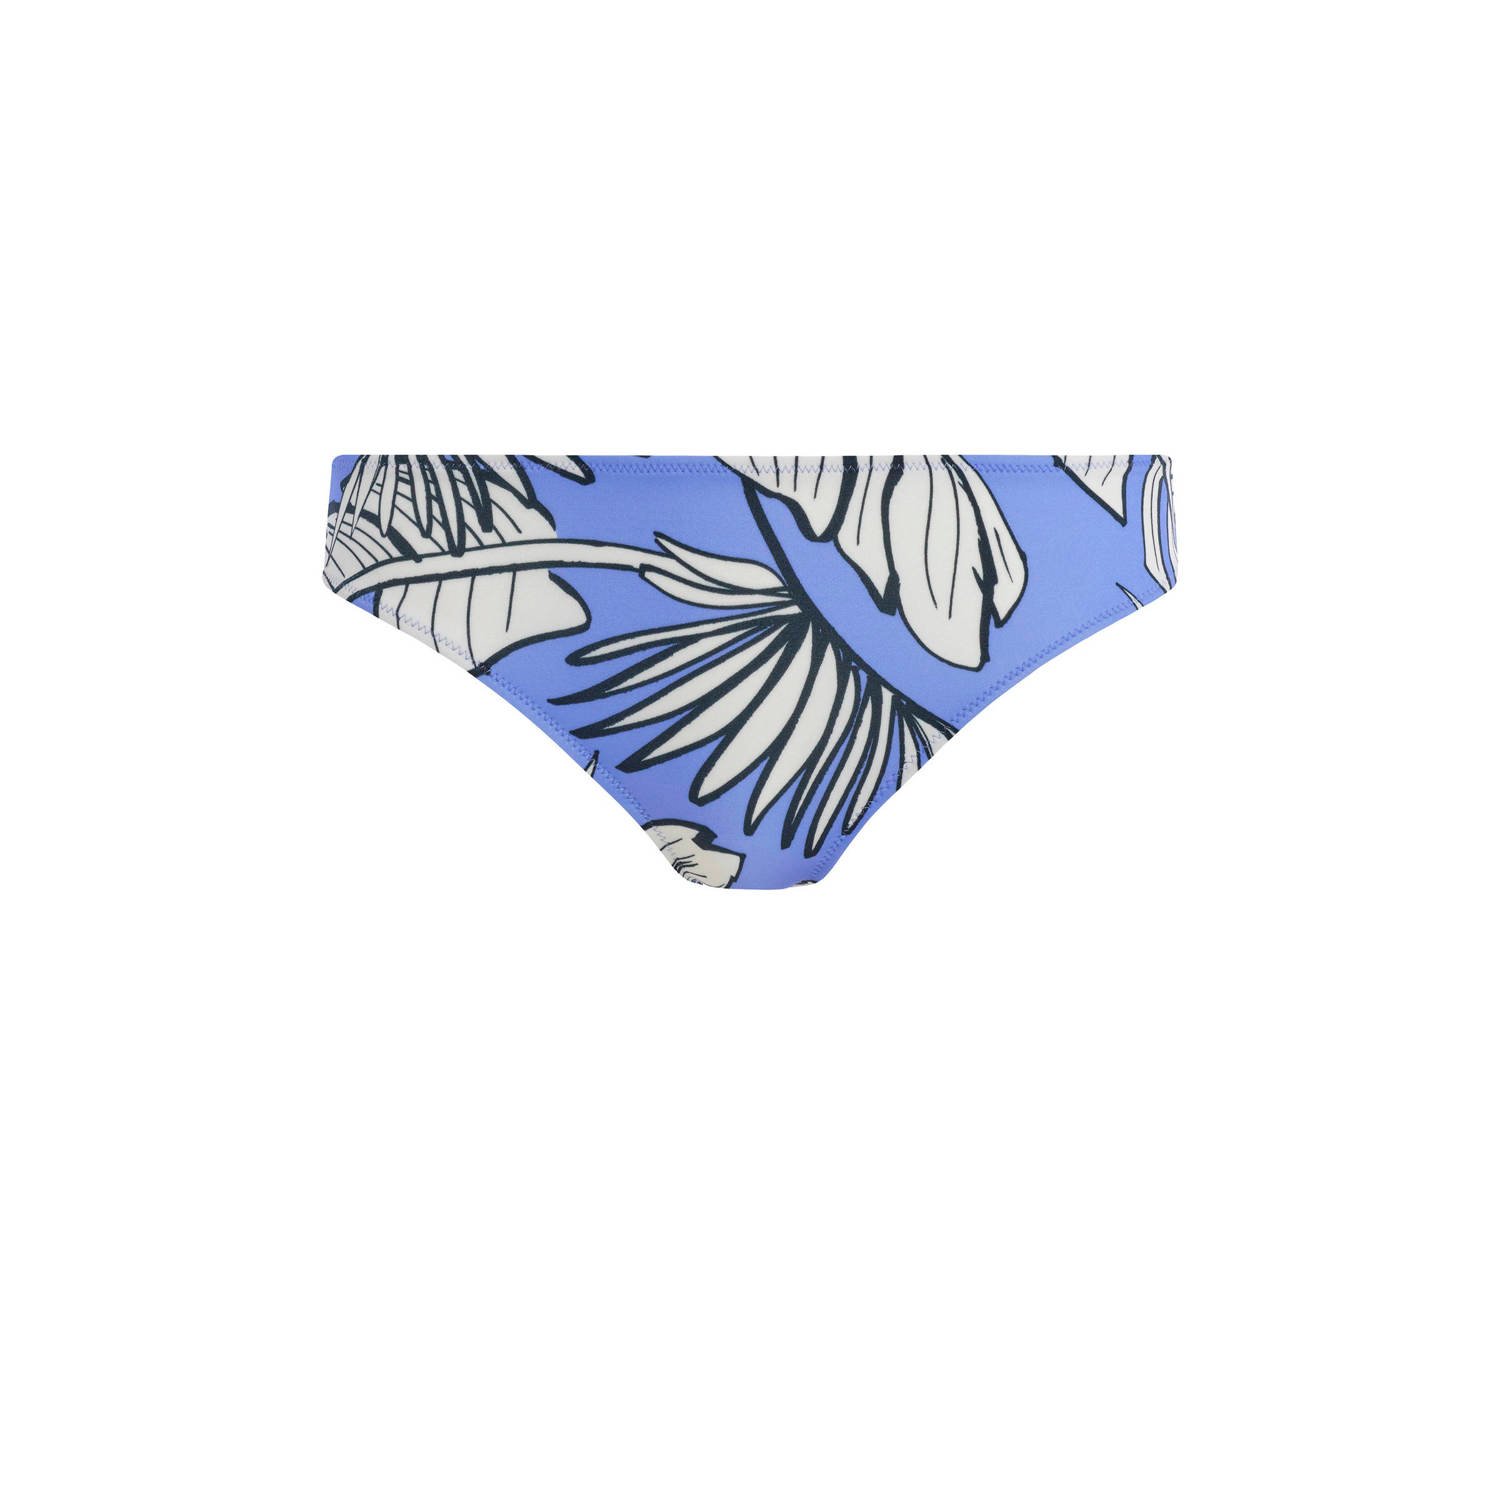 Freya bikinibroekje Mali Beach blauw wit